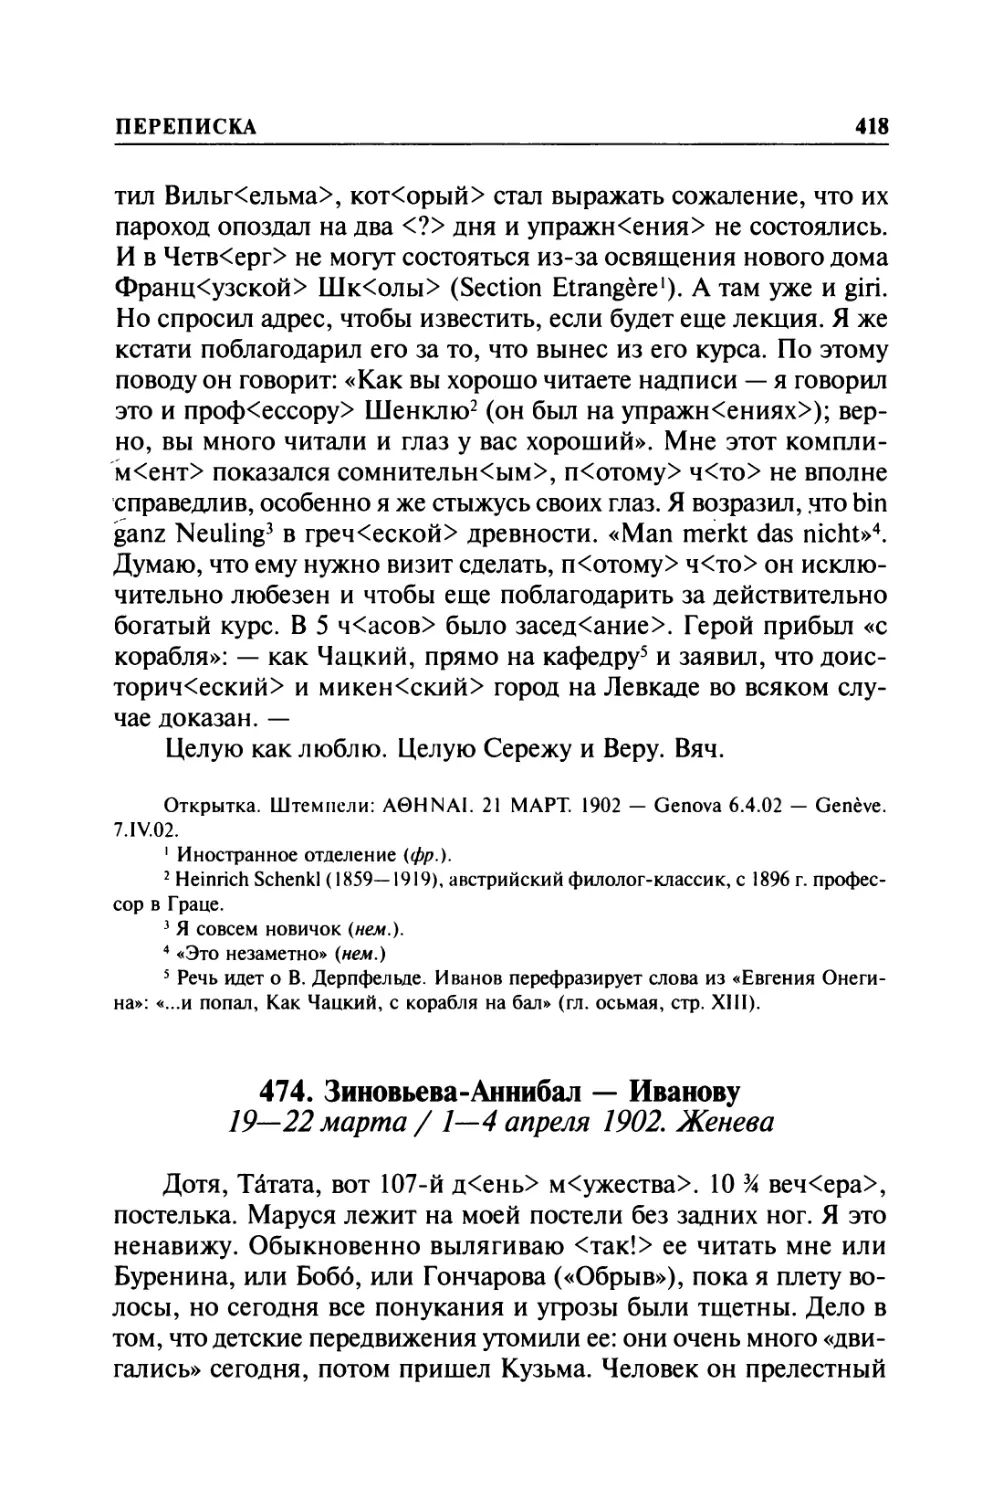 474. Зиновьева-Аннибал — Иванову. 19—22 марта / 1—4 апреля 1902. Женева